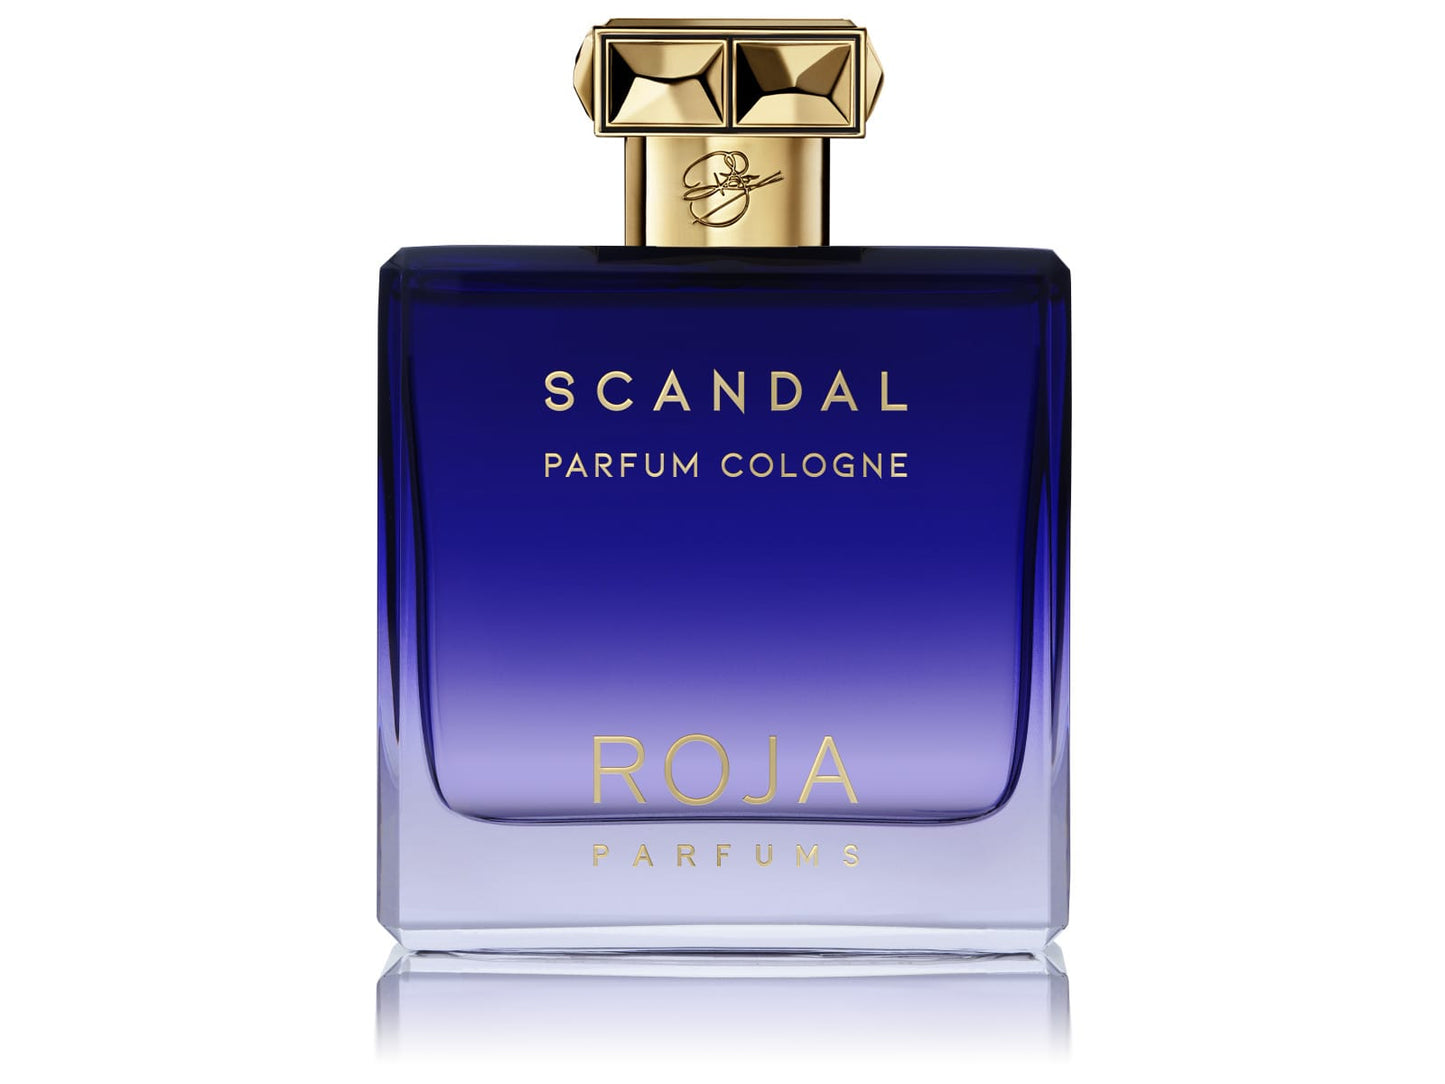 Roja - Scandal Pour Homme Parfum Cologne